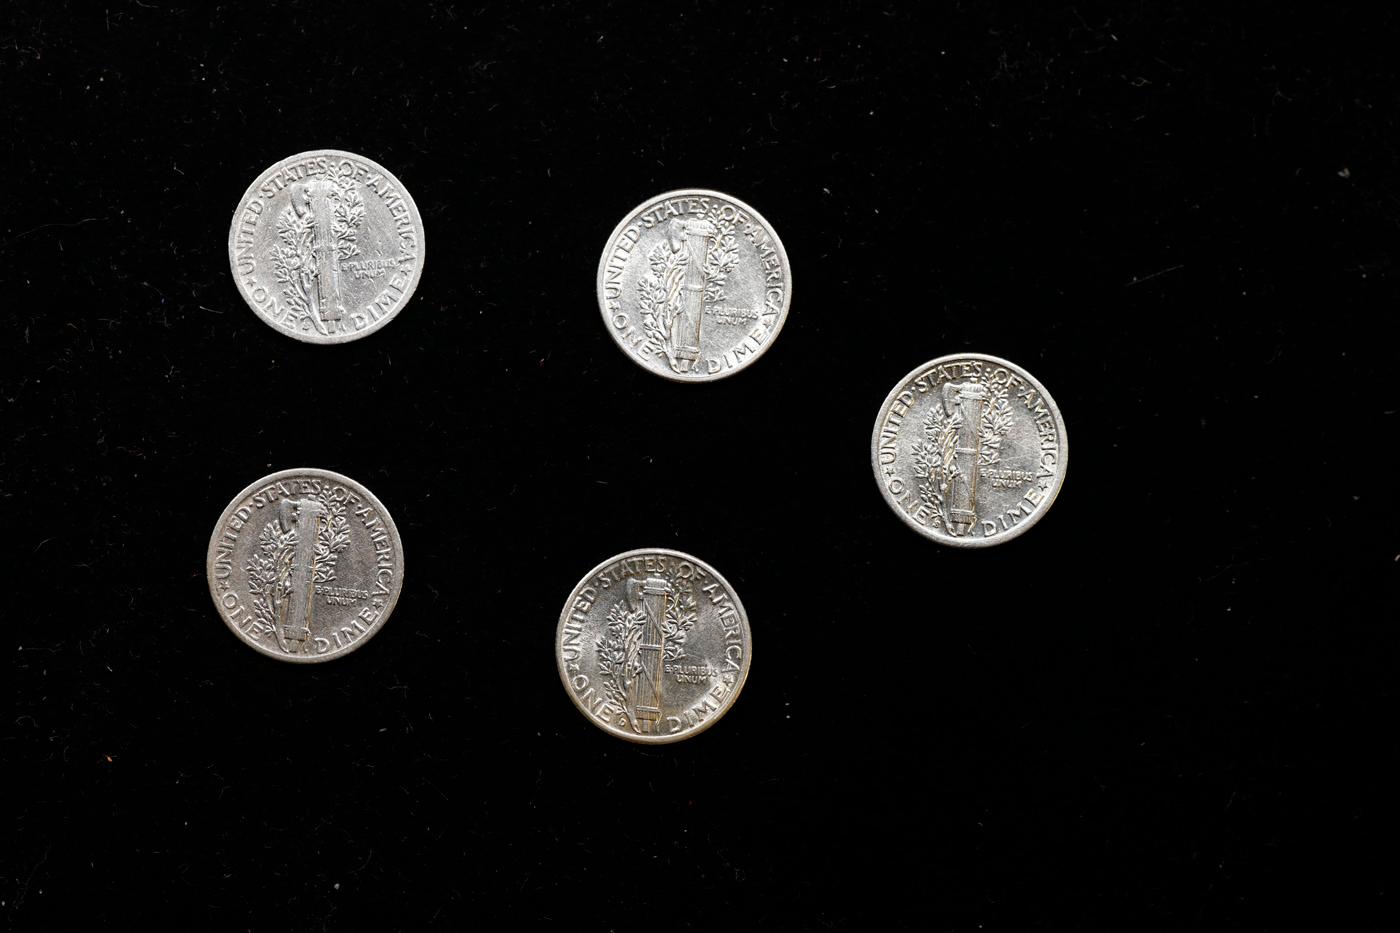 Lot of Five Coins - 1919-p, 1937-s, 1938-s, 1942-p, 1944-d Mercury Dime 10c Grades